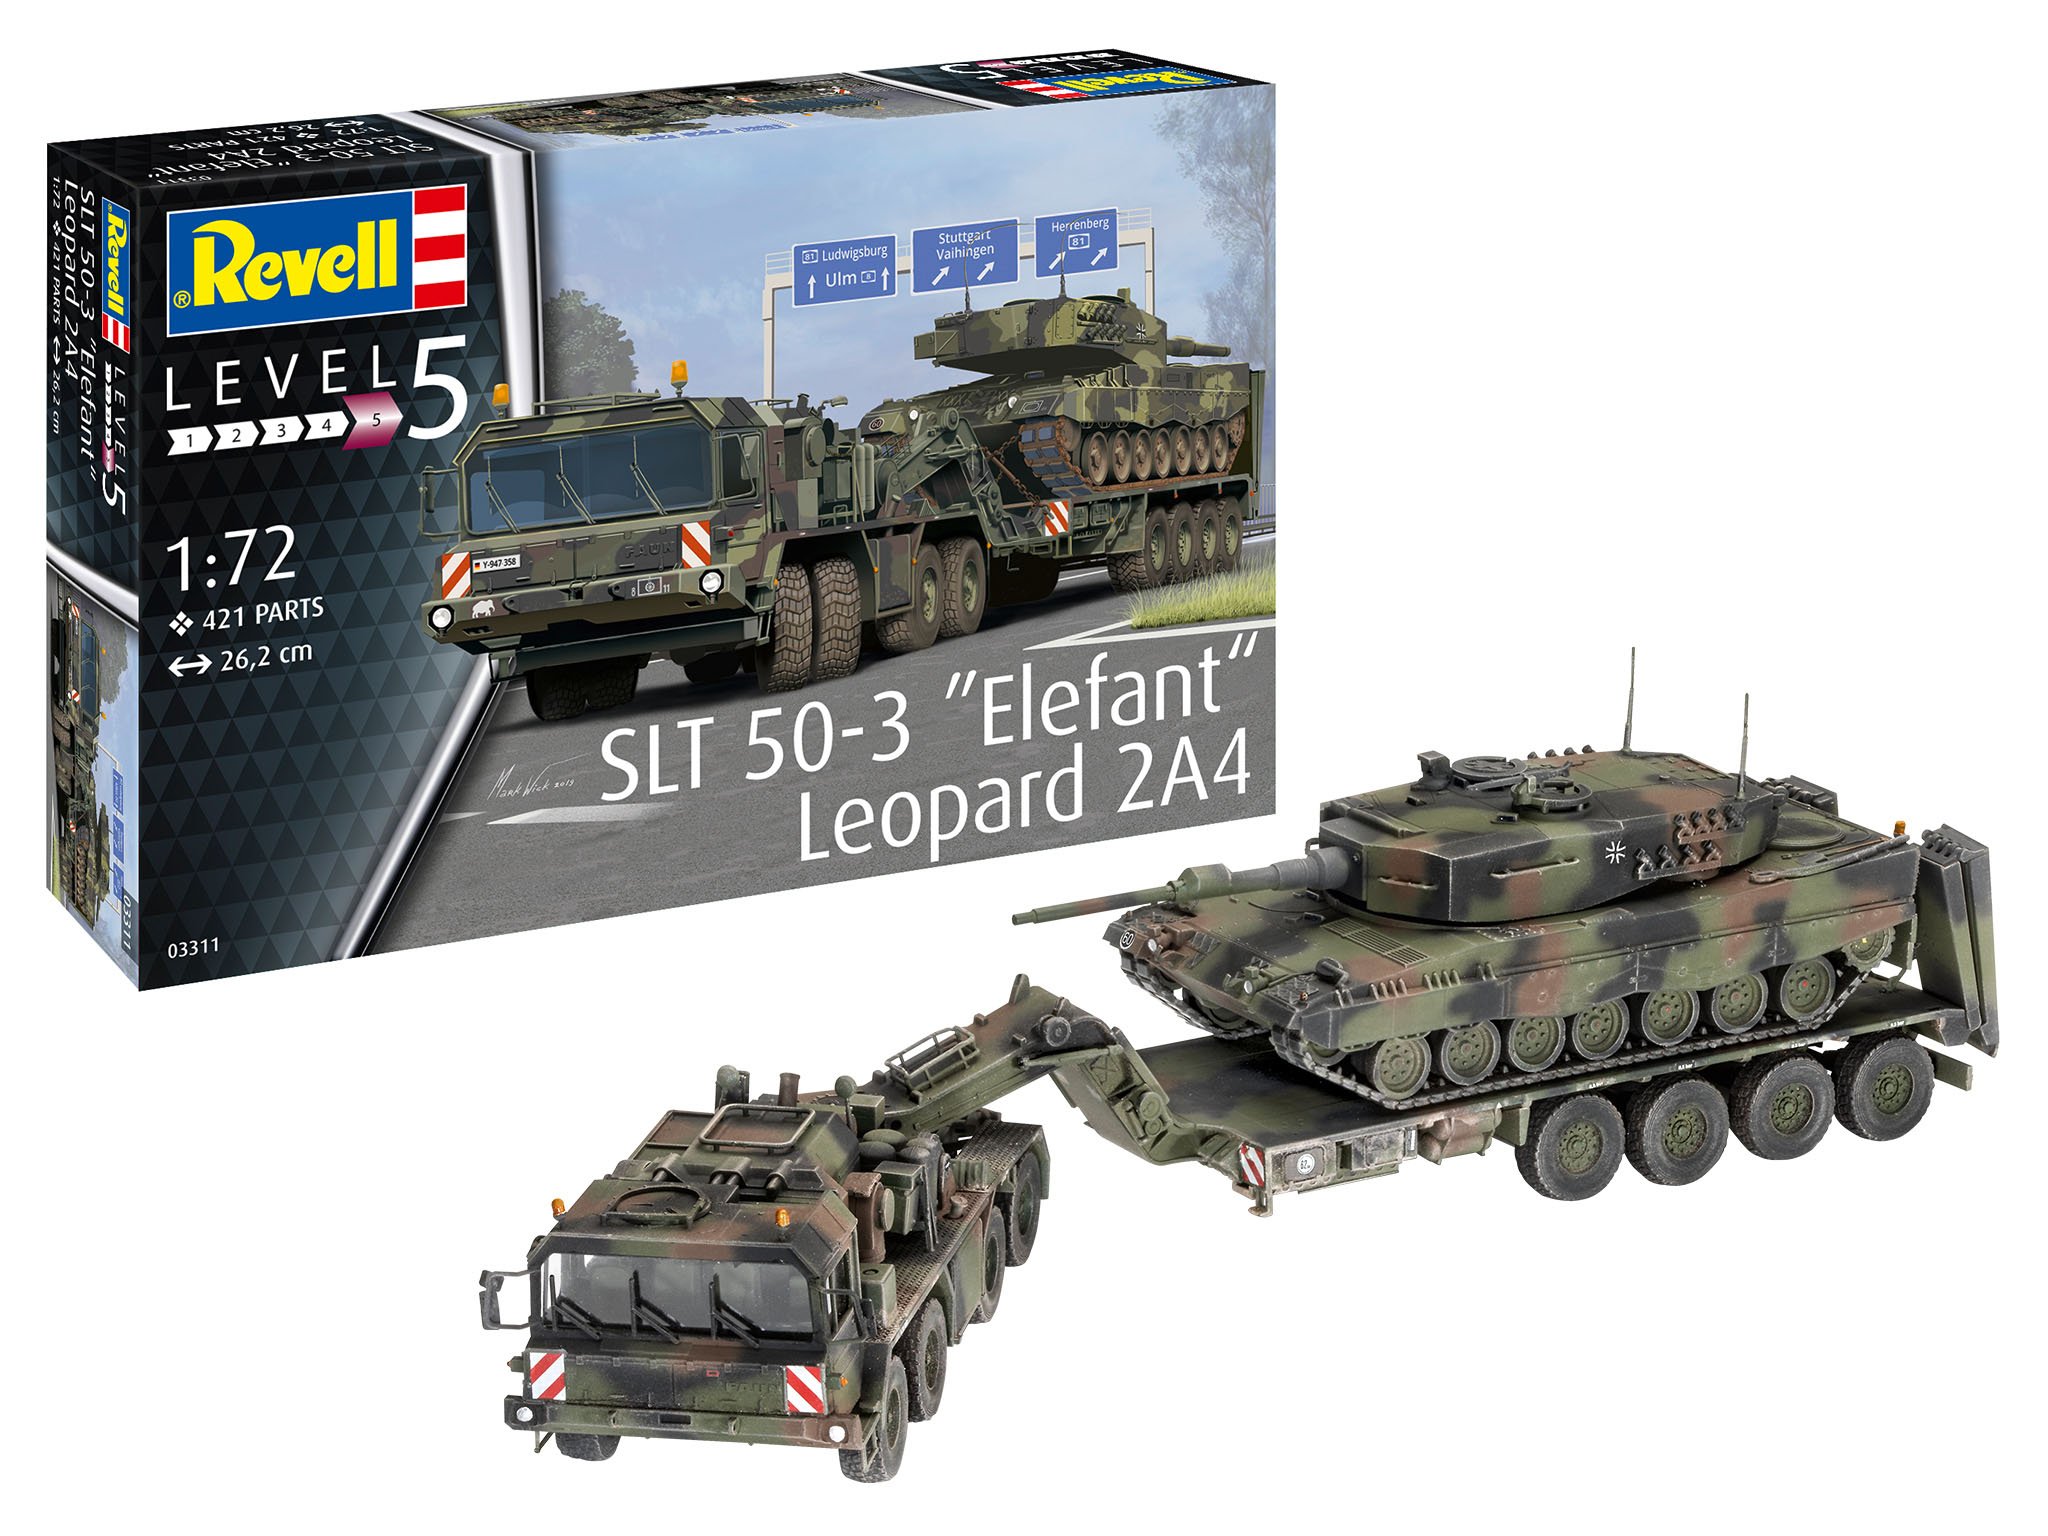 Revell SLT 50-3 "Elefant" + Leopard 2A4 in 1:72 bouwpakket